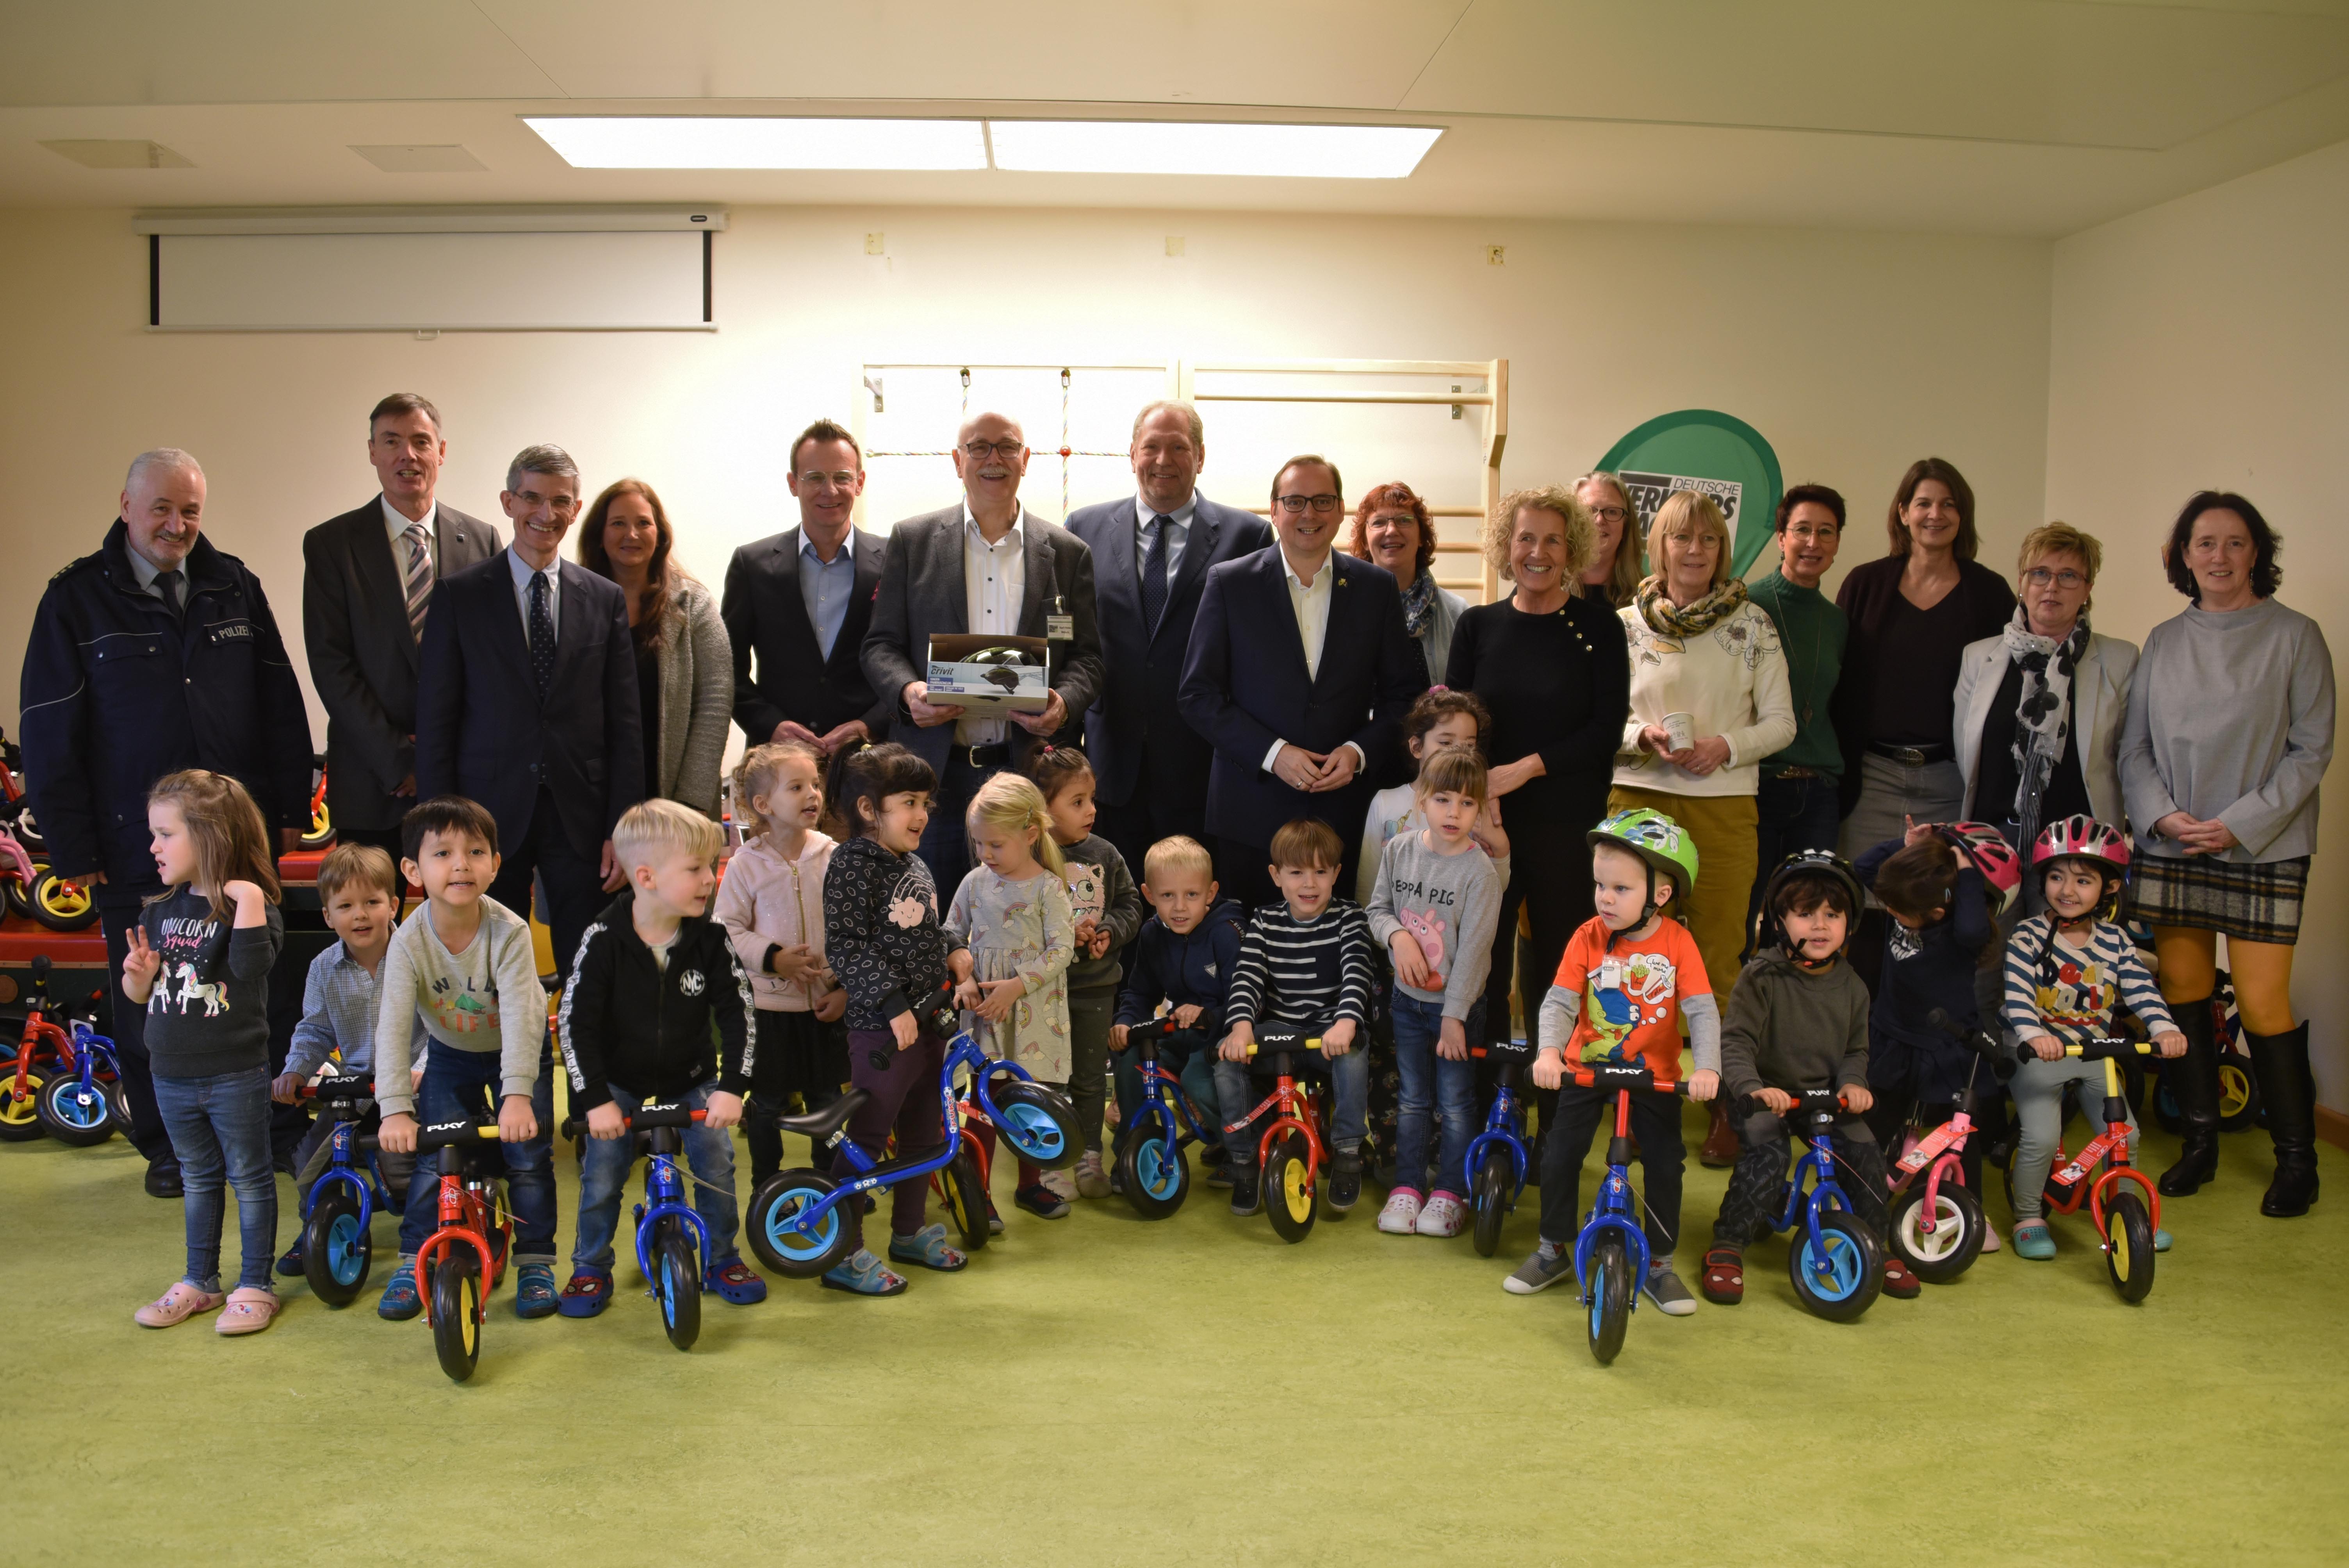 Gruppenfoto mit Kindern und Polizeipräsident - Laufräder wurden an Kindertagesstätte übergeben